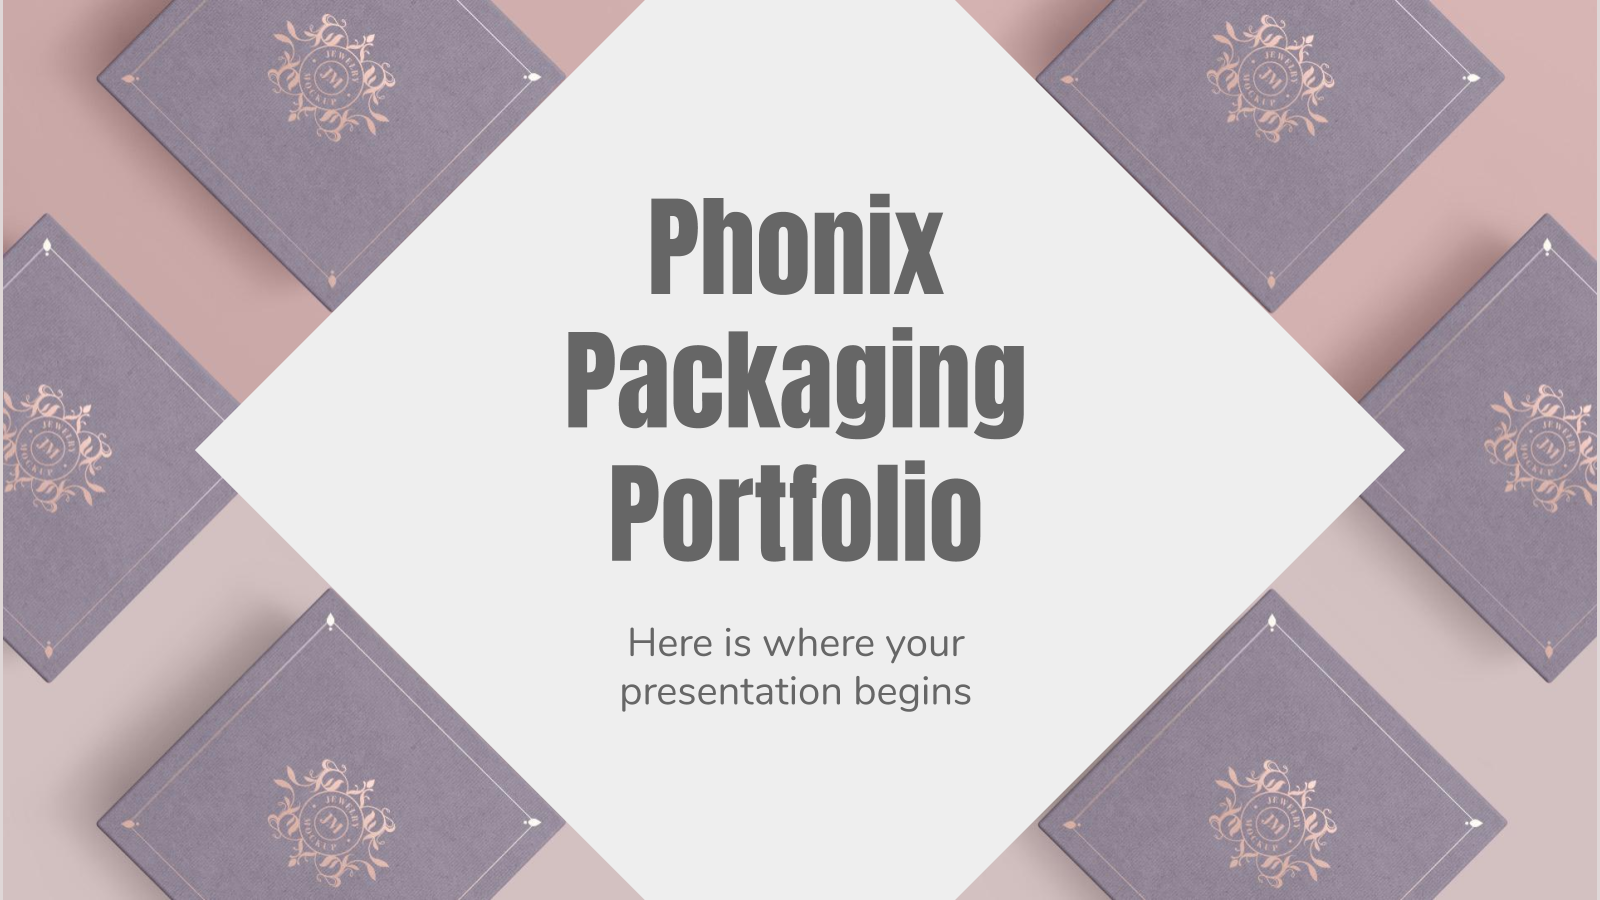 Phonix包装组合PowerPoint模板